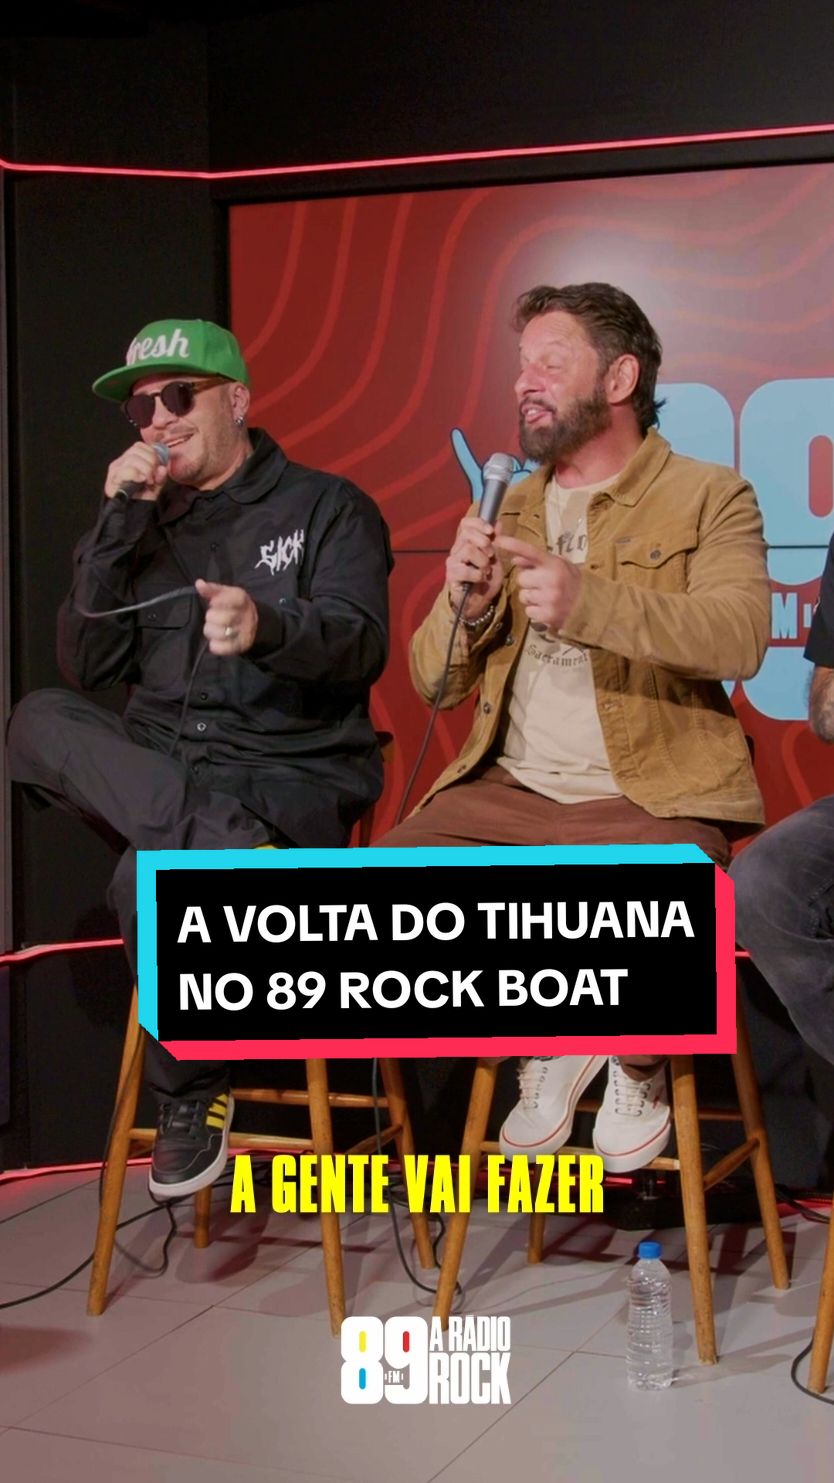 🔥TIHUANA ESTÁ DE VOLTA🔥 É isso mesmo, o @tihuanarock está de volta! Em pausa desde 2017, e o marco desse retorno vai ser no 89 Rock Boat! Não vai perder a chance de vê-los ao vivo, hein! 🔥⚓️ #89fm #89RockBoat #Tihuana #89aRadioRock